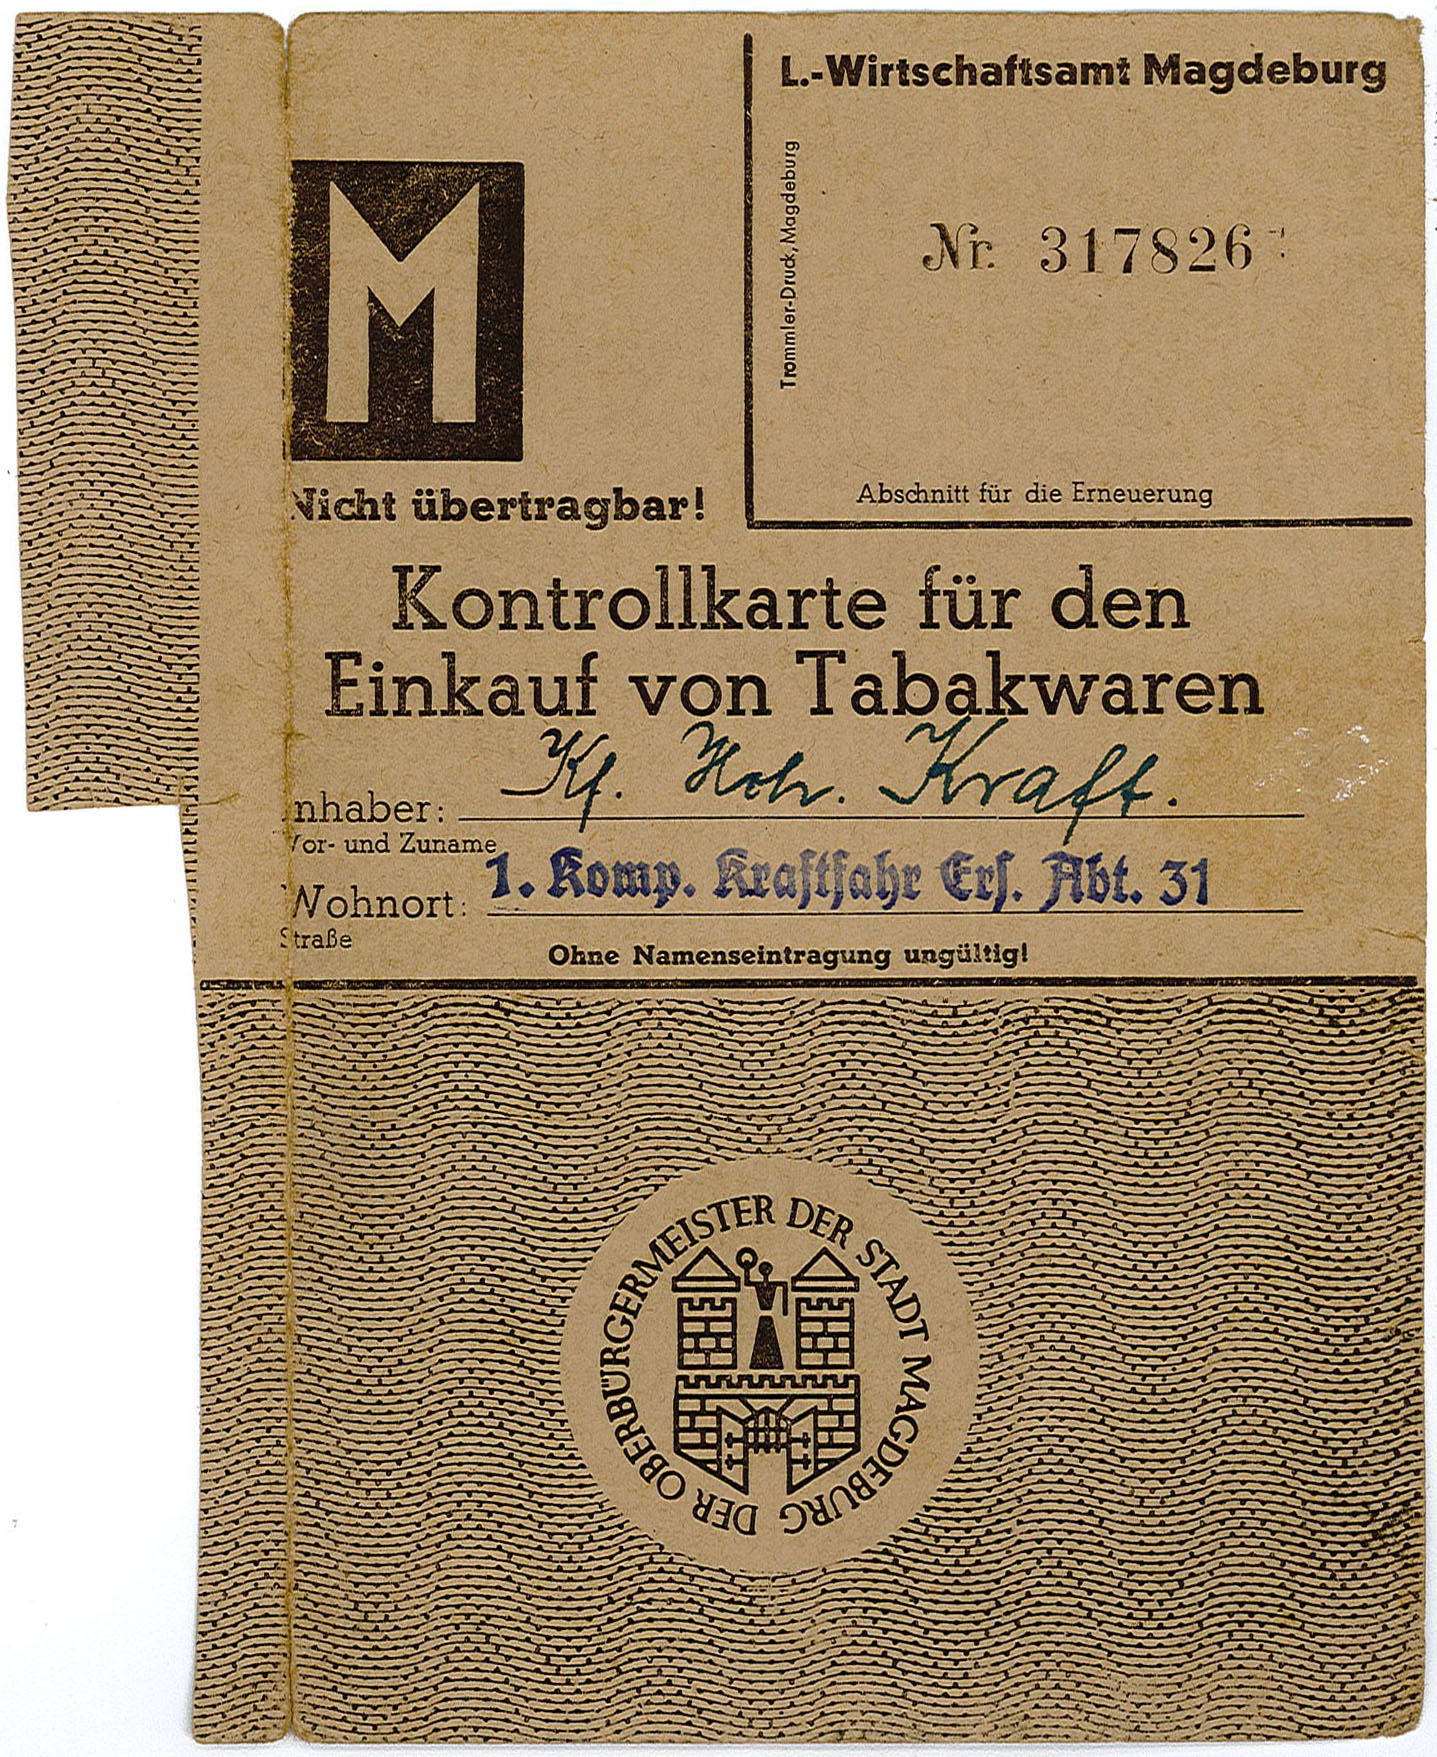 Kontrollkarte für den Einkauf von Tabakwaren für Joh. Kraft, 1942 (Museum Wolmirstedt RR-F)